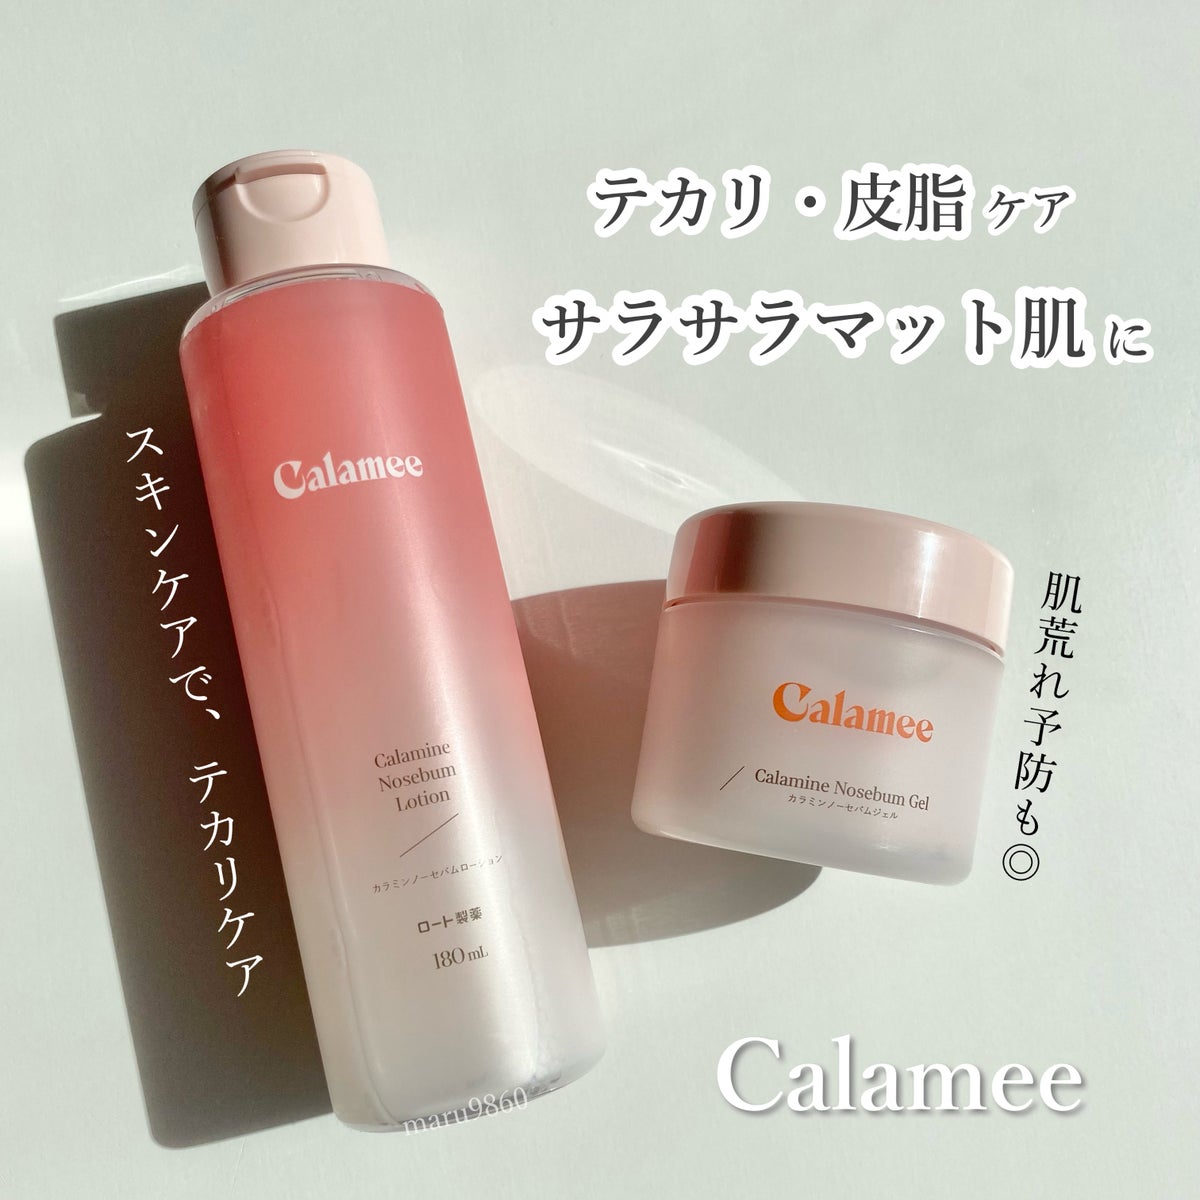 Calameeのスキンケア・基礎化粧品 カラミンノーセバムジェル＆カラミン